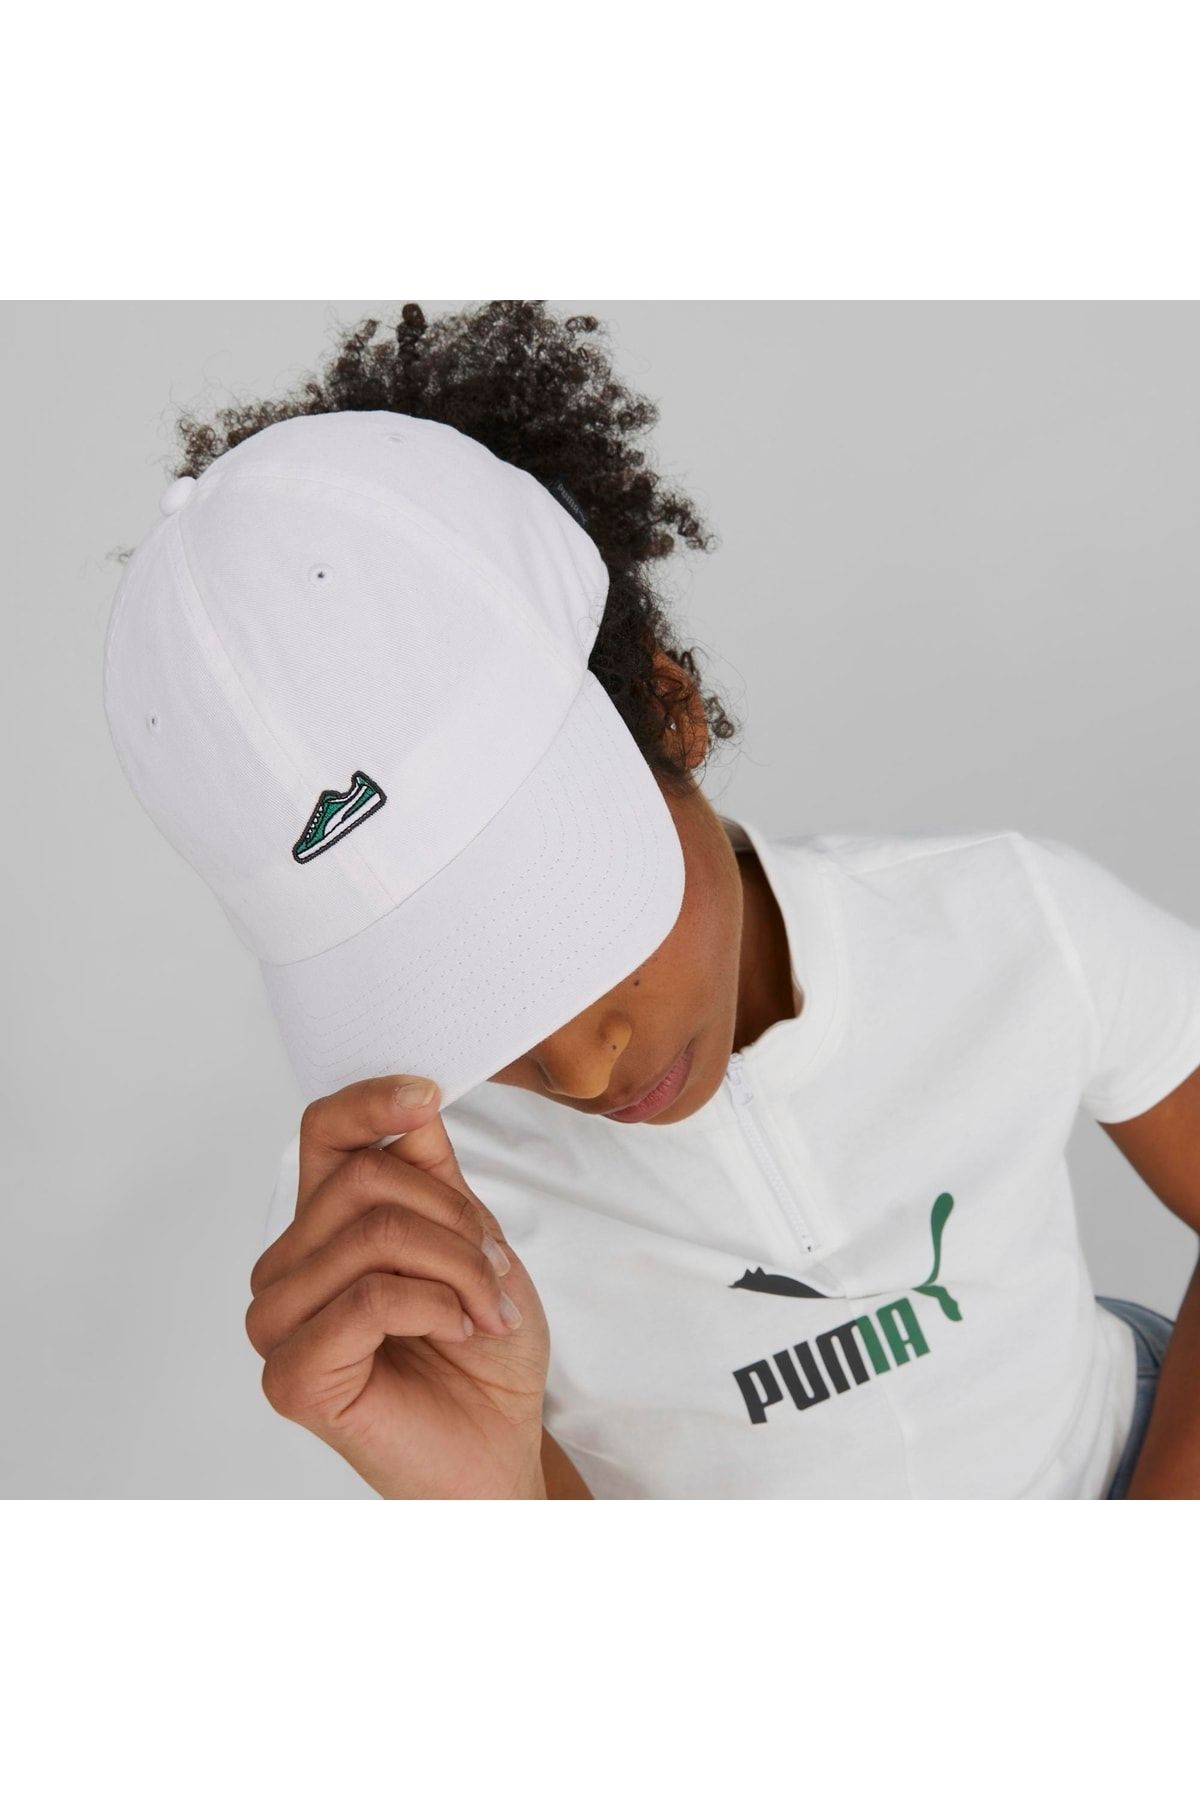 Puma کلاه پدر Prime کفش سفید ورزشی